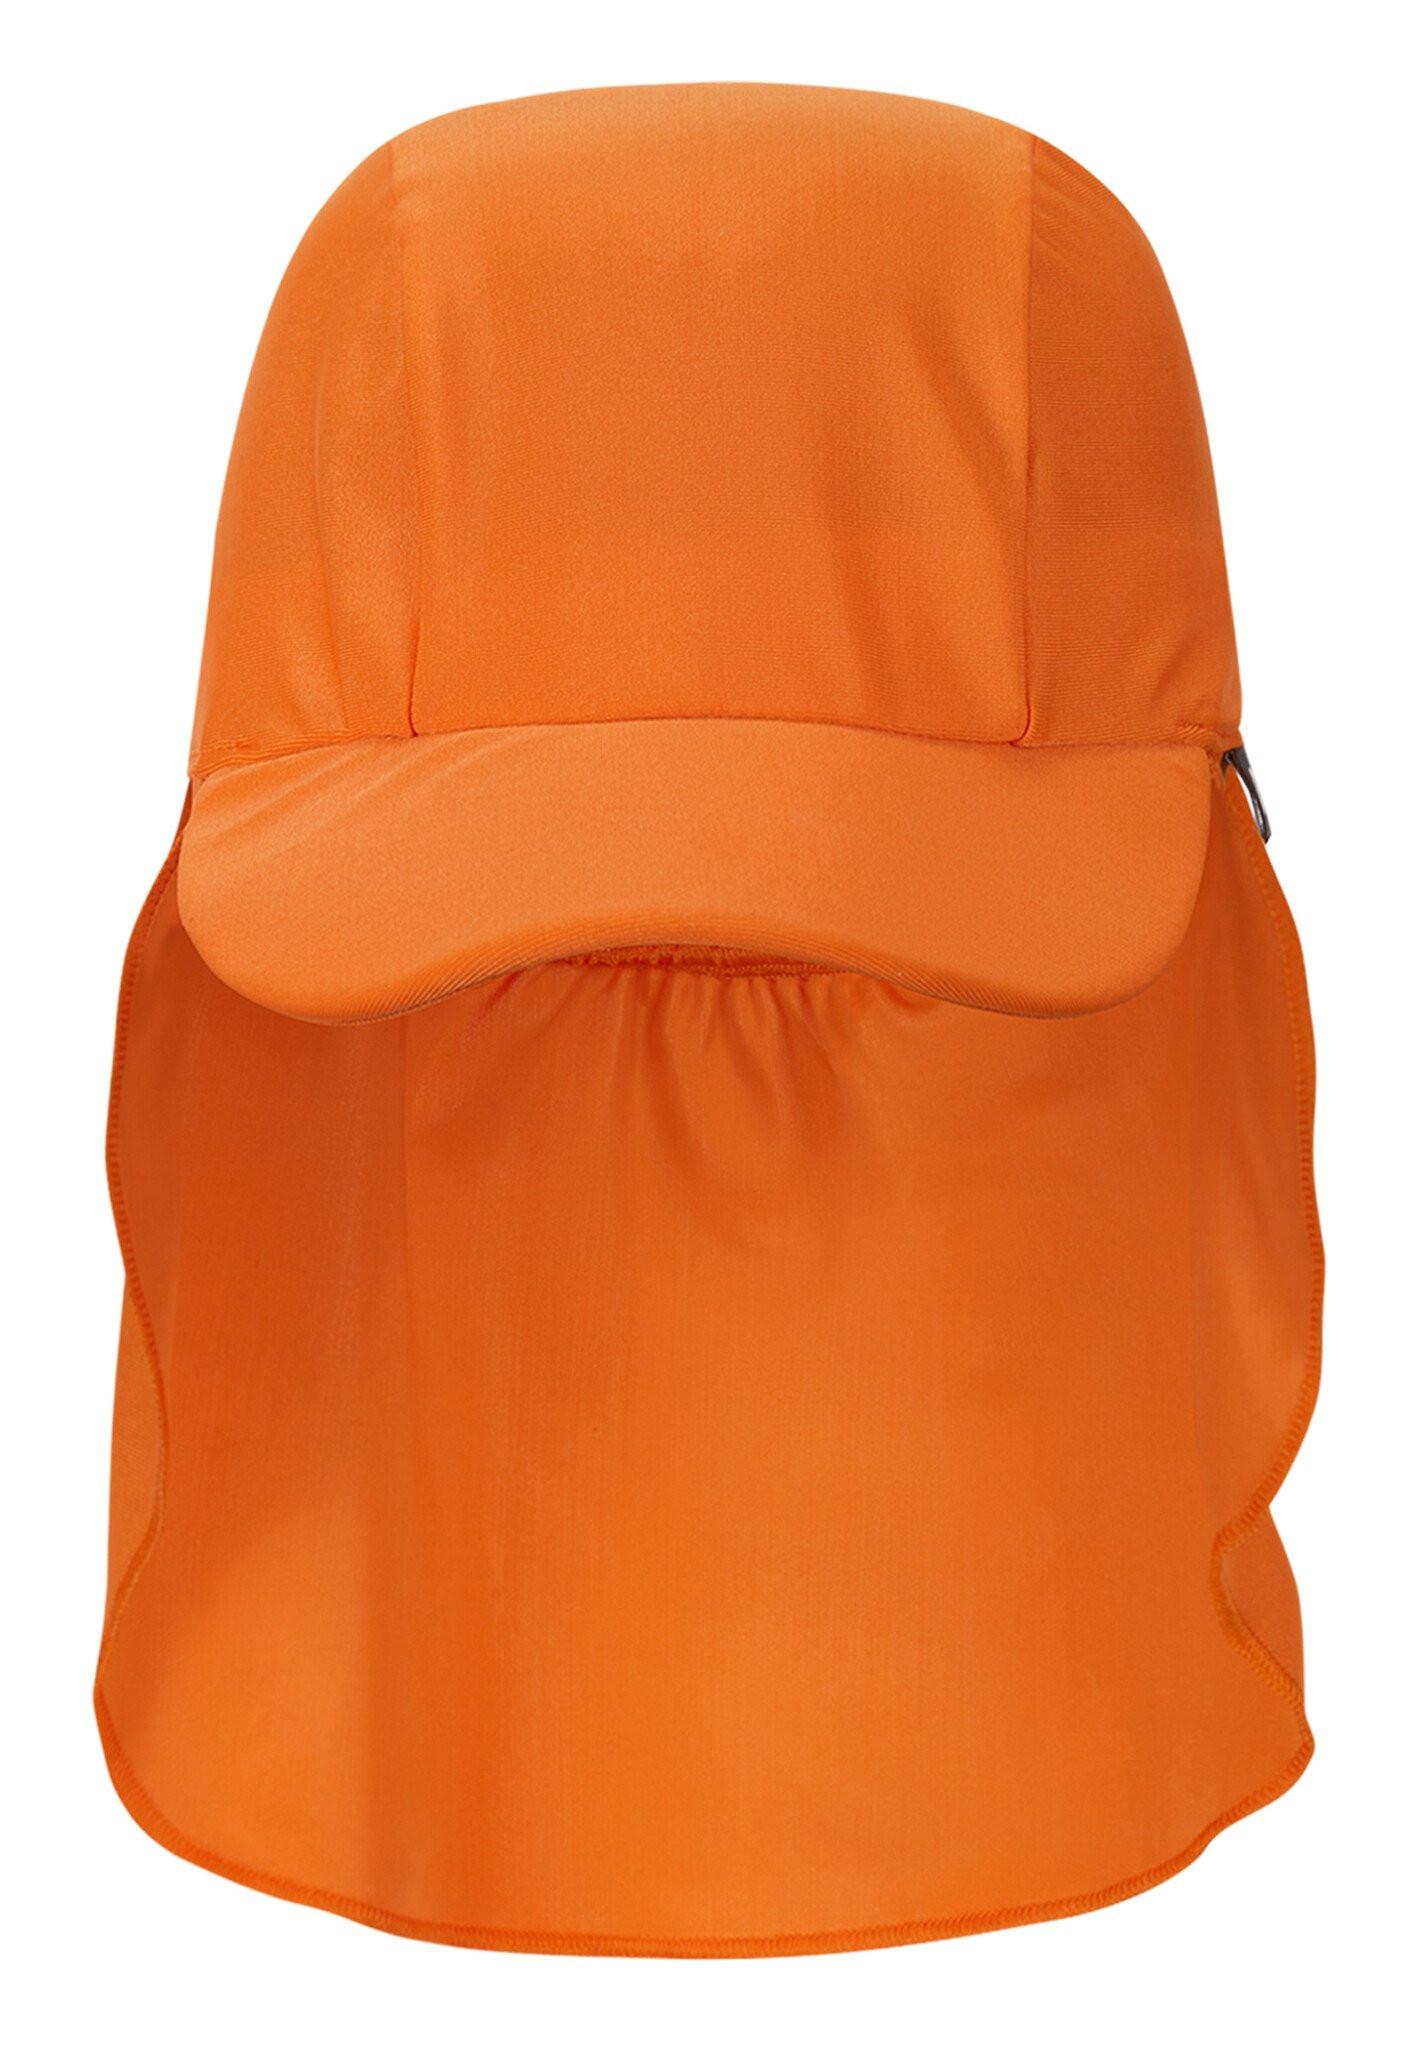 Reima  Kinder Sonnenschutz Hut Kilpikonna Orange 